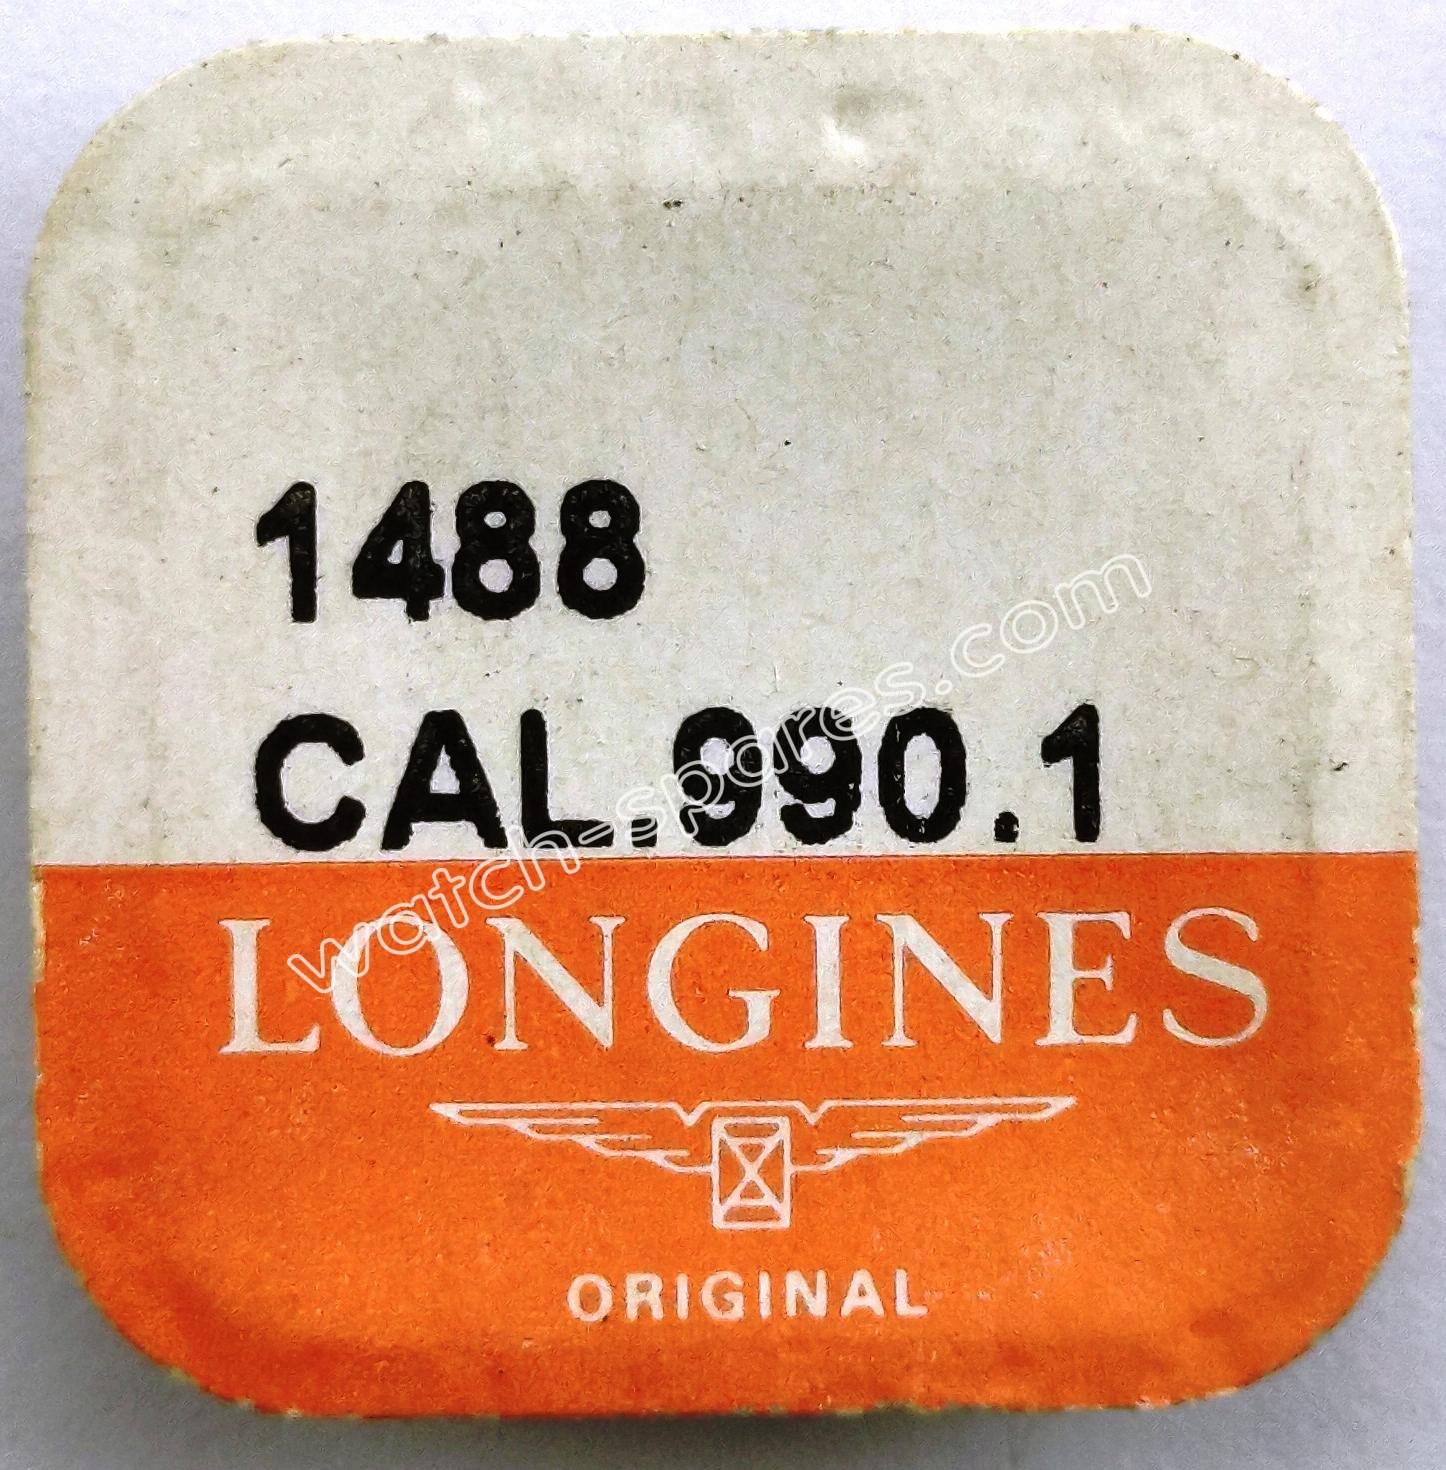 Longines 990.1 Part 1488 Pawl Wheel Mounted